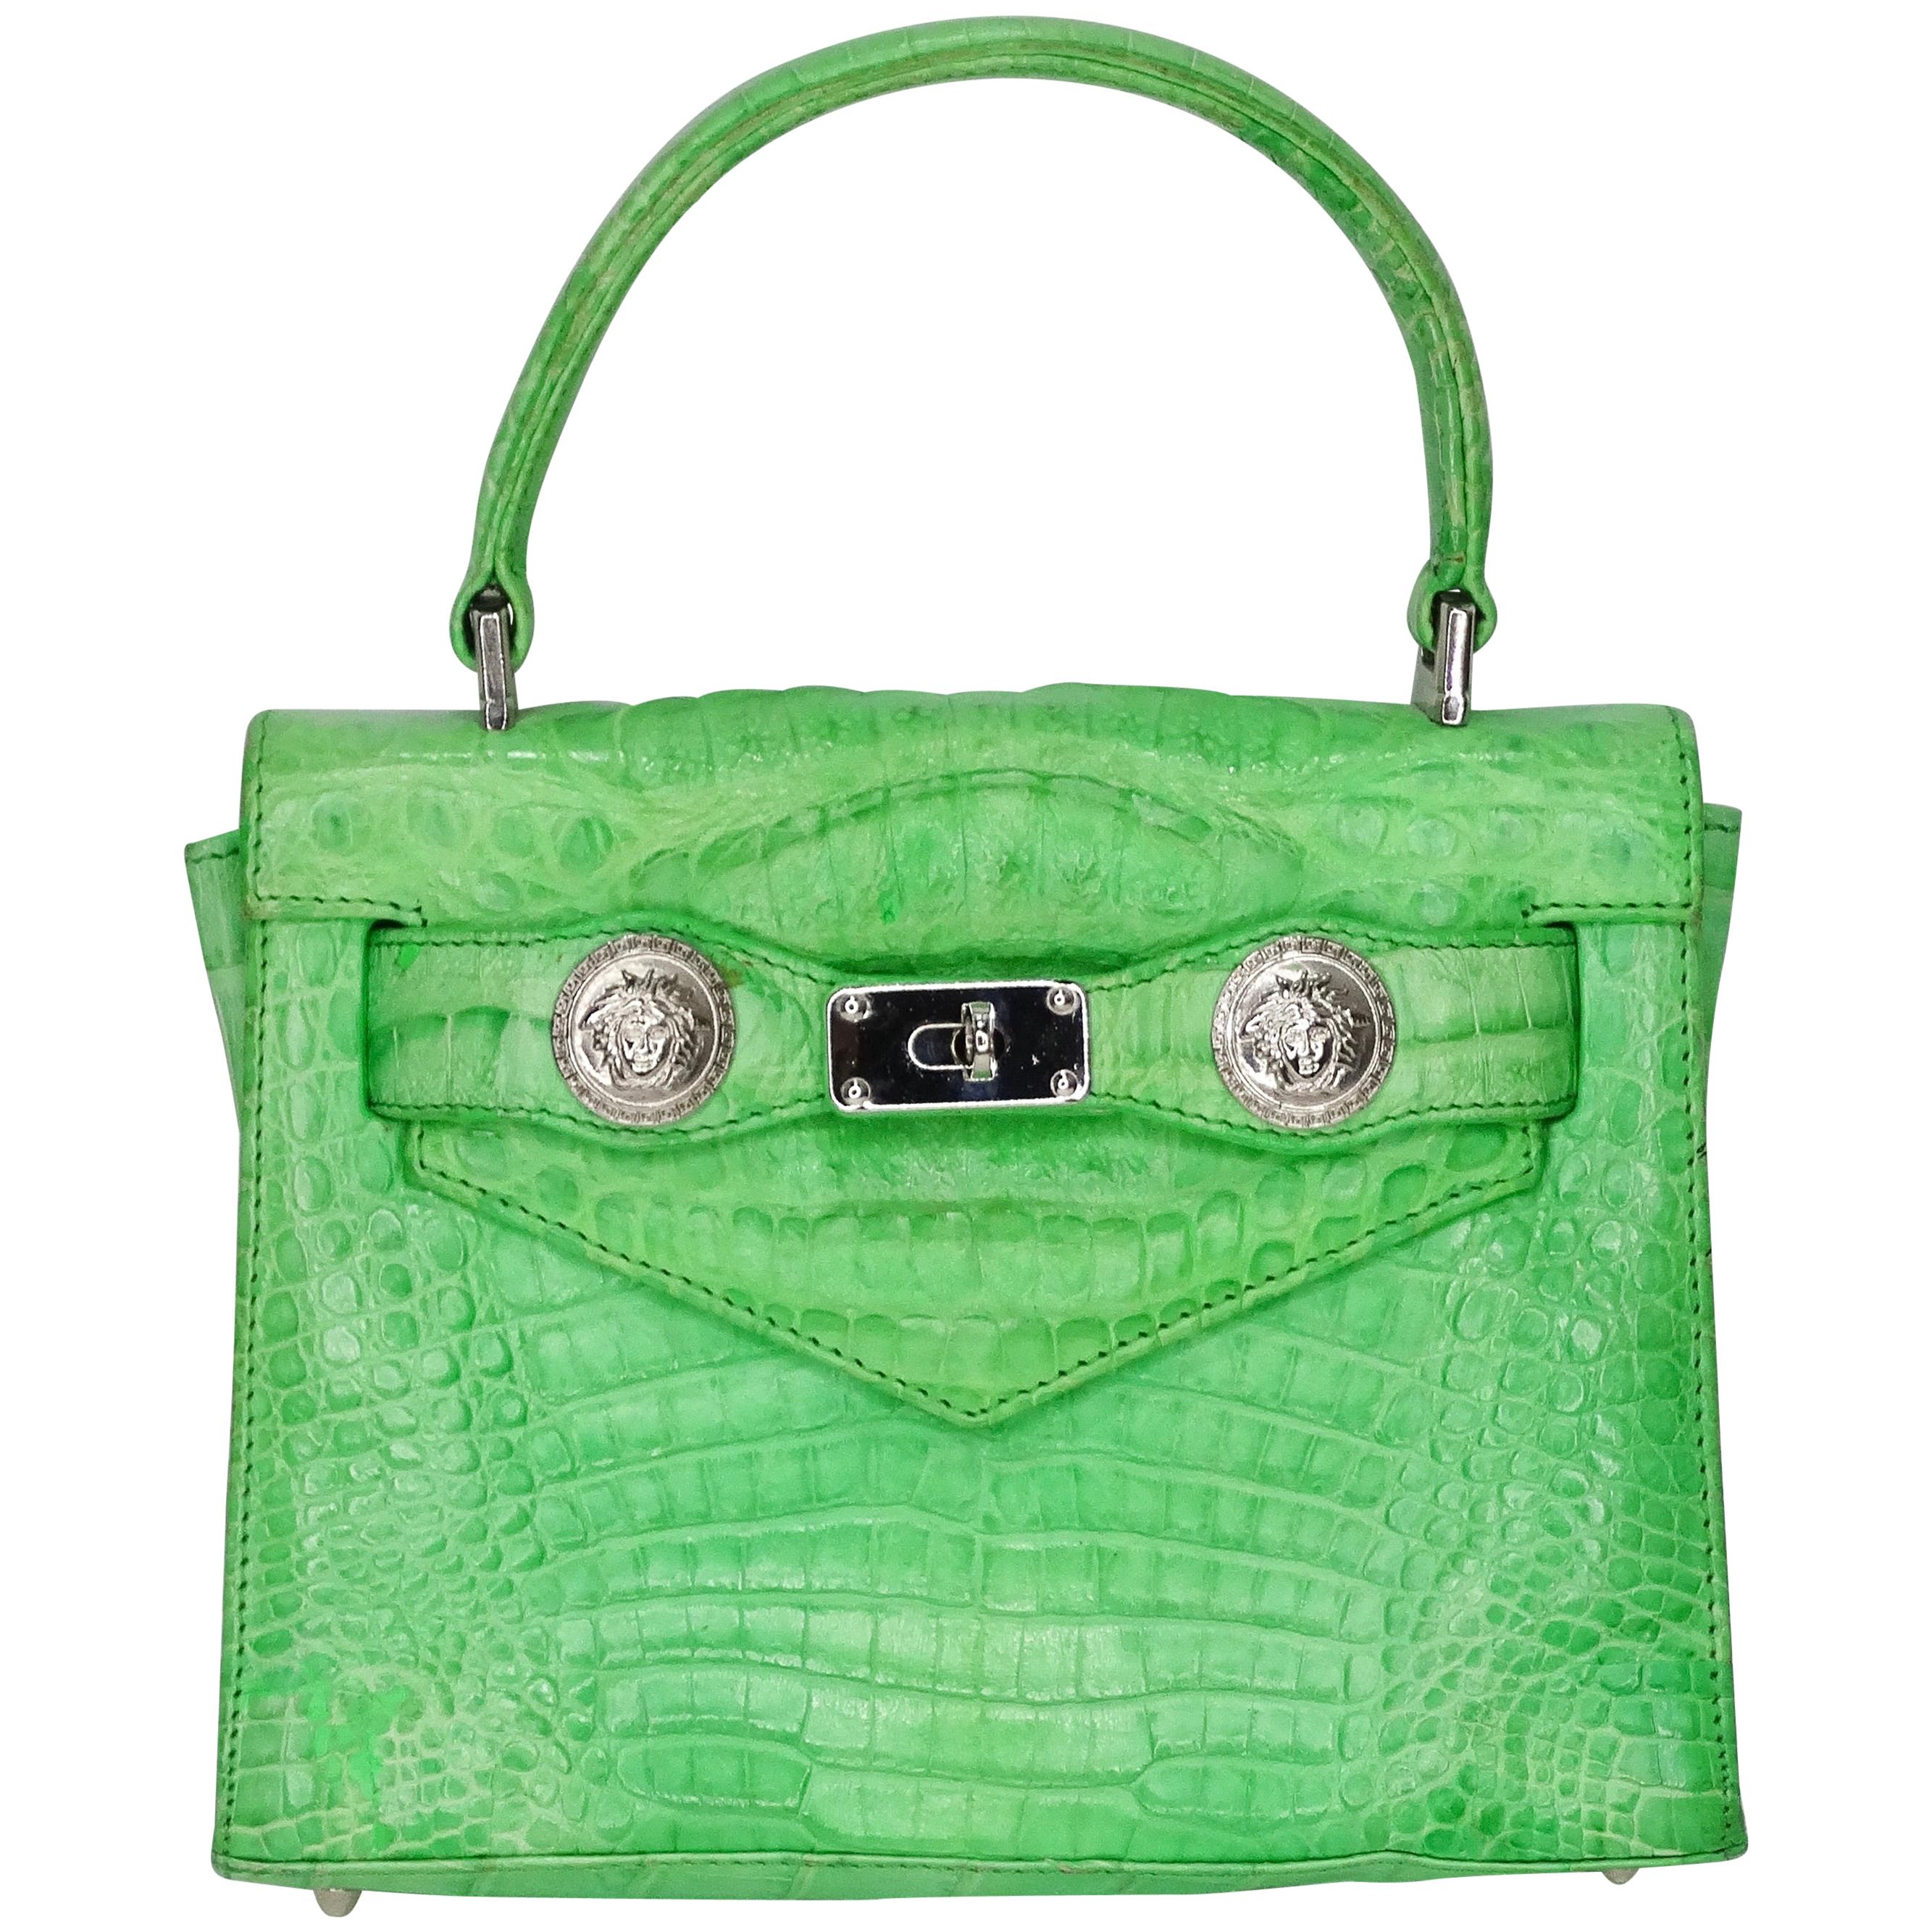 Gianni Versace 1990s Lime Green Crocodile Mini Handbag at 1stDibs